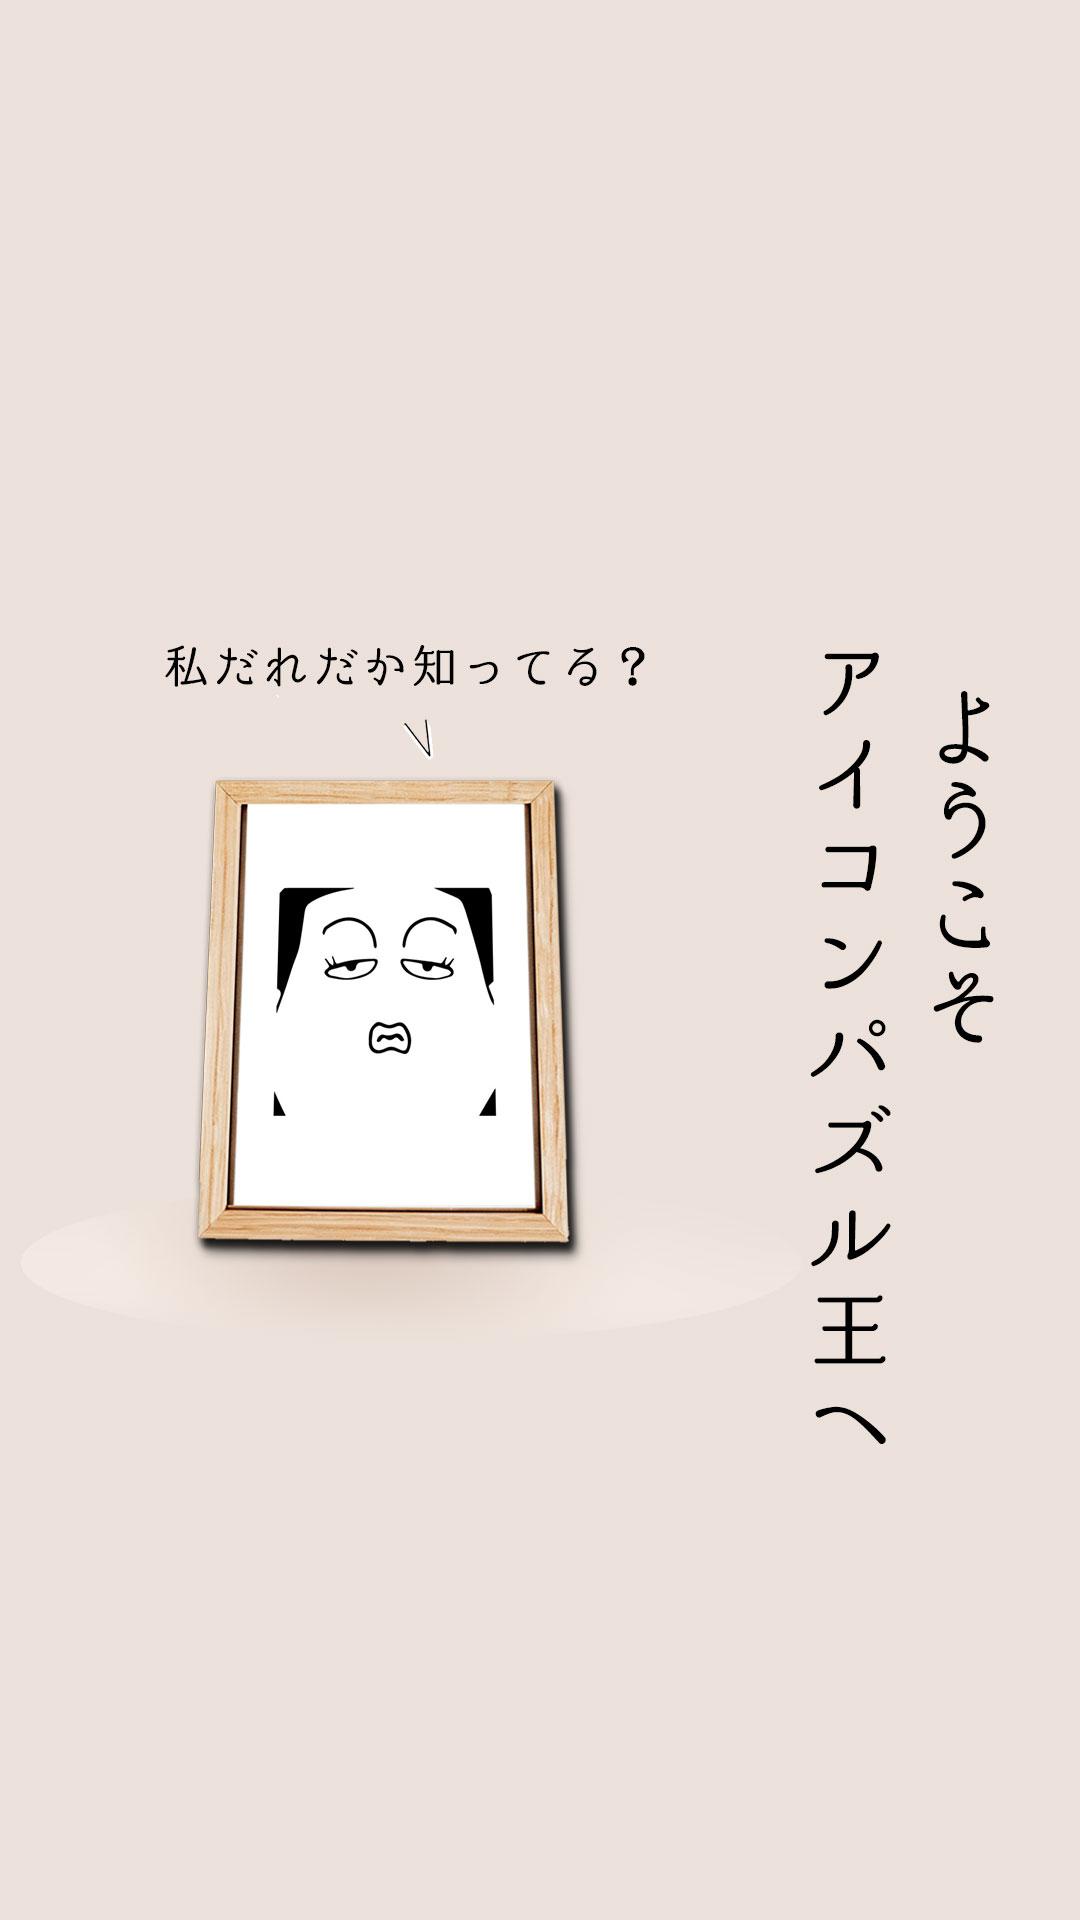 アイコンクイズ王 暇つぶし謎トレアニメキャラクターパズルゲーム For Android Apk Download